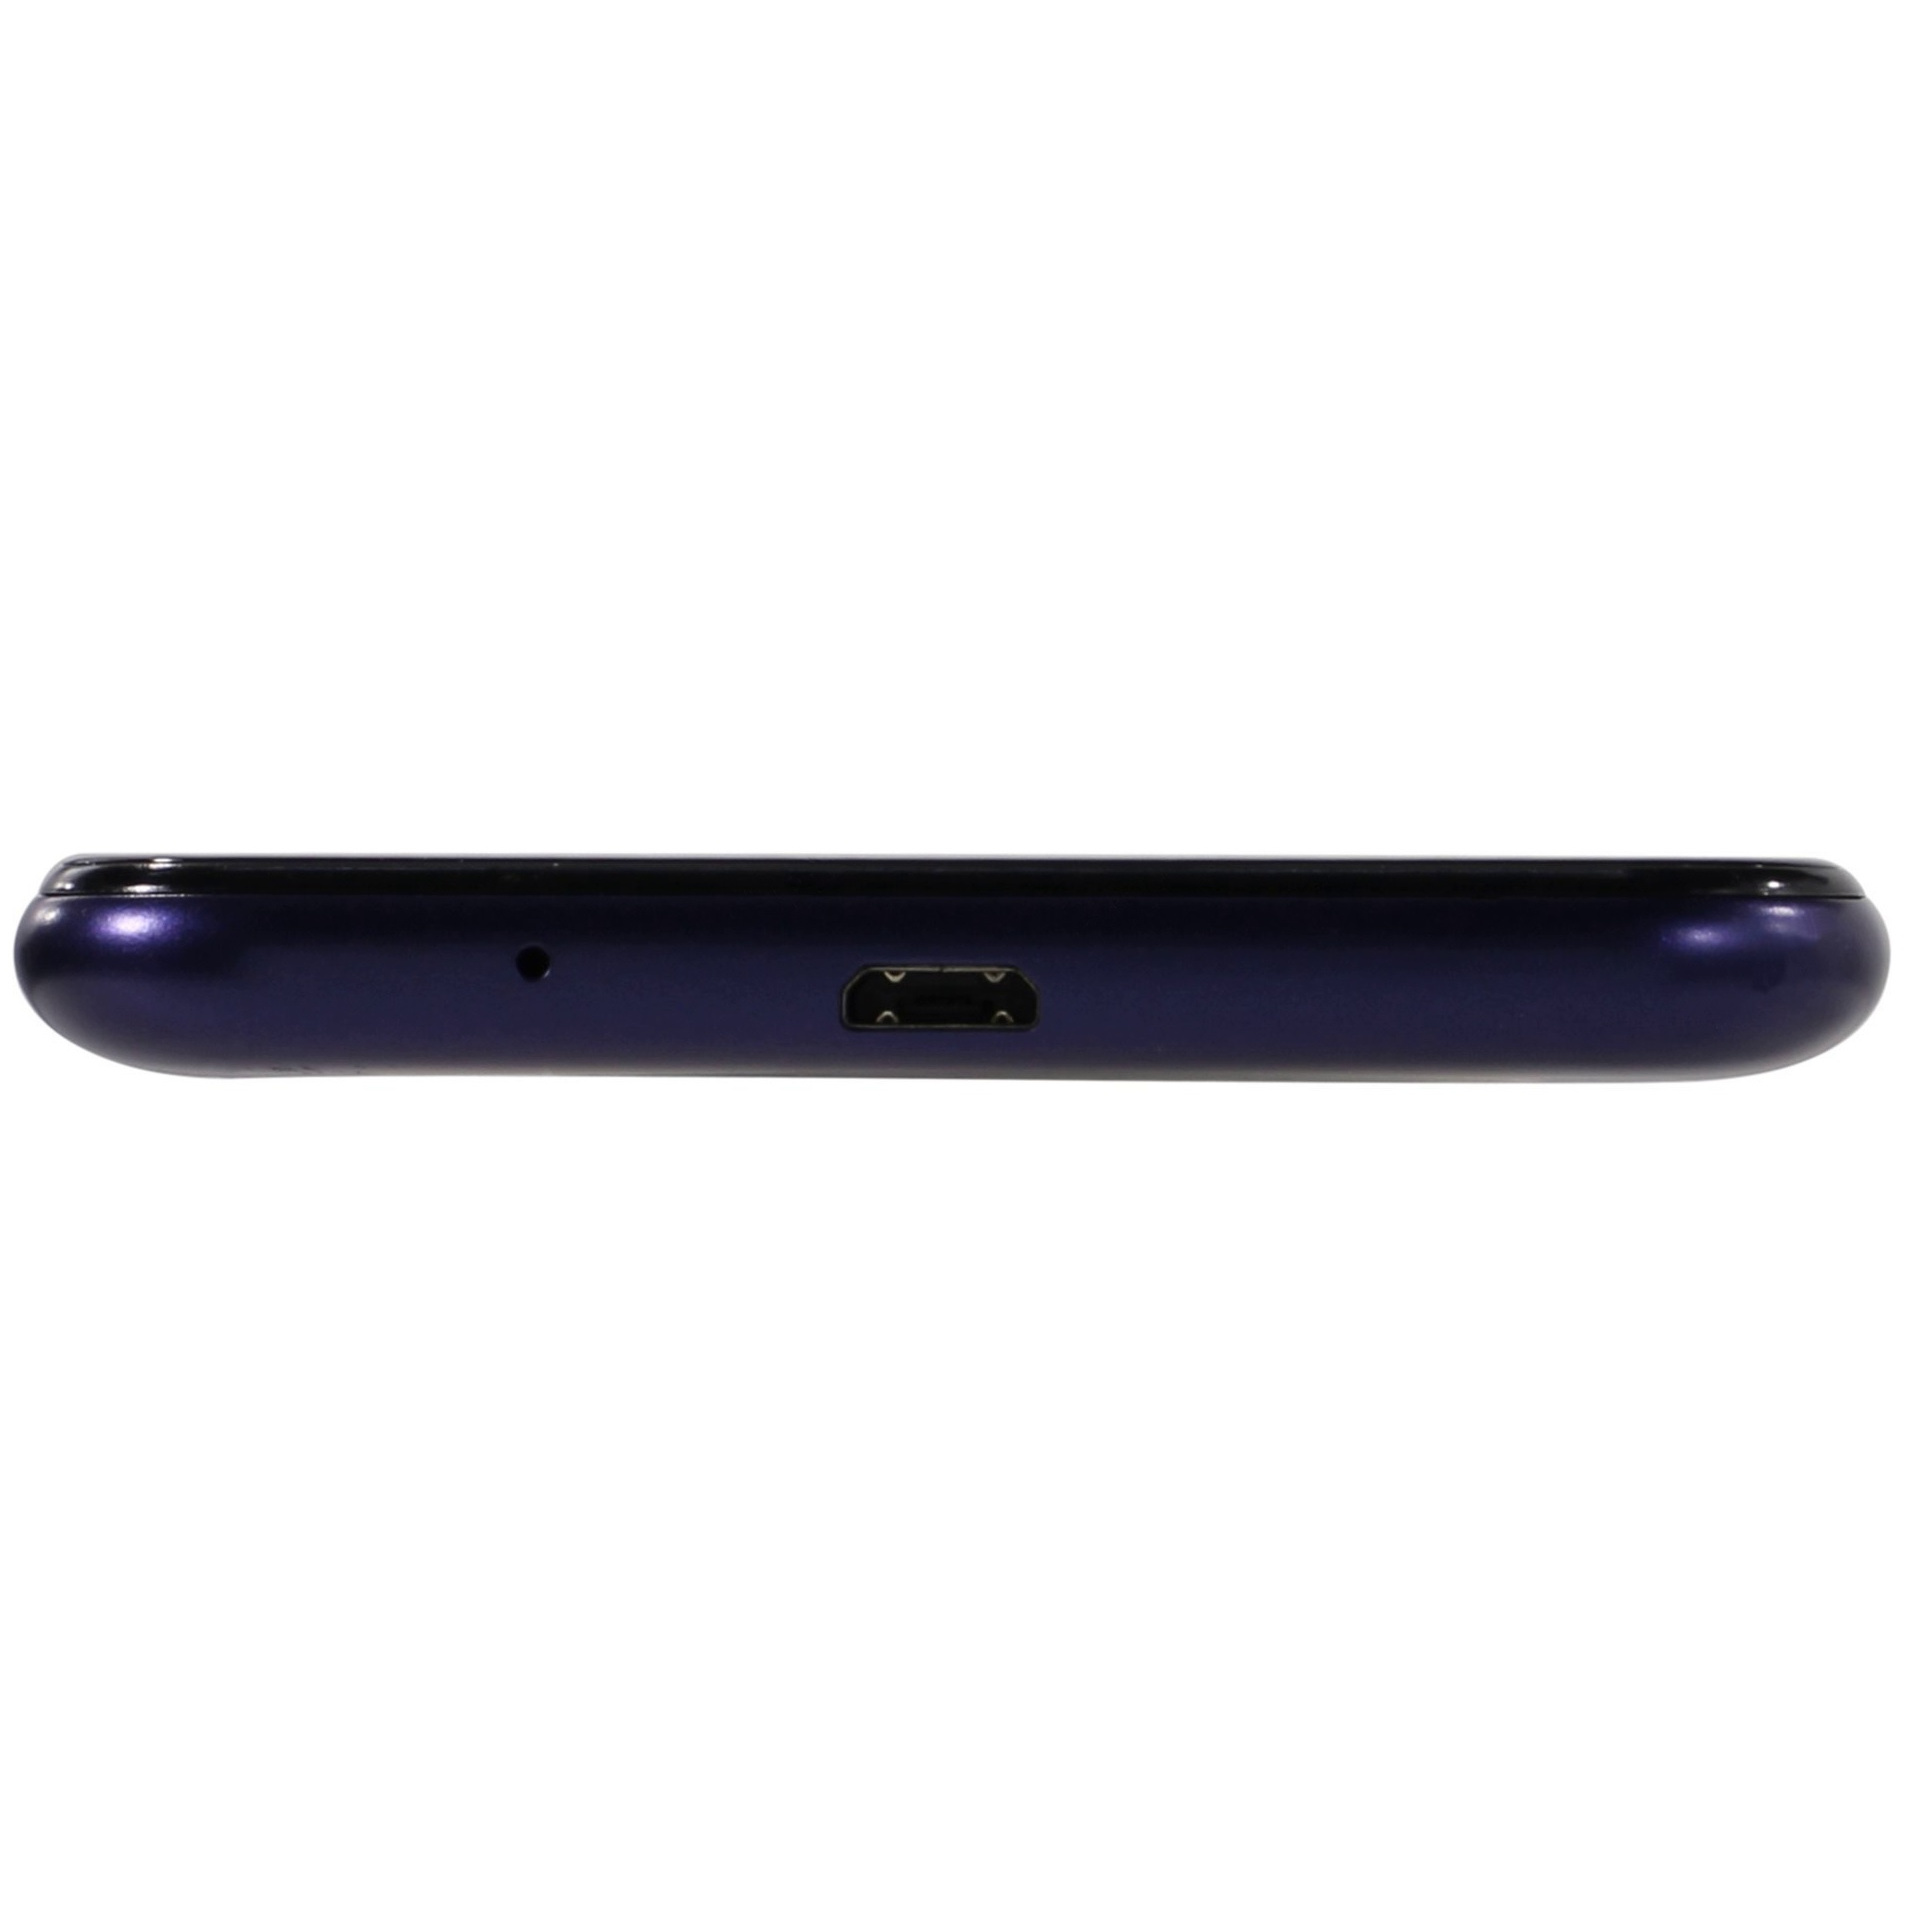 Смартфон Samsung Galaxy A01 2/16GB Blue (SM-A015FZBDSER)